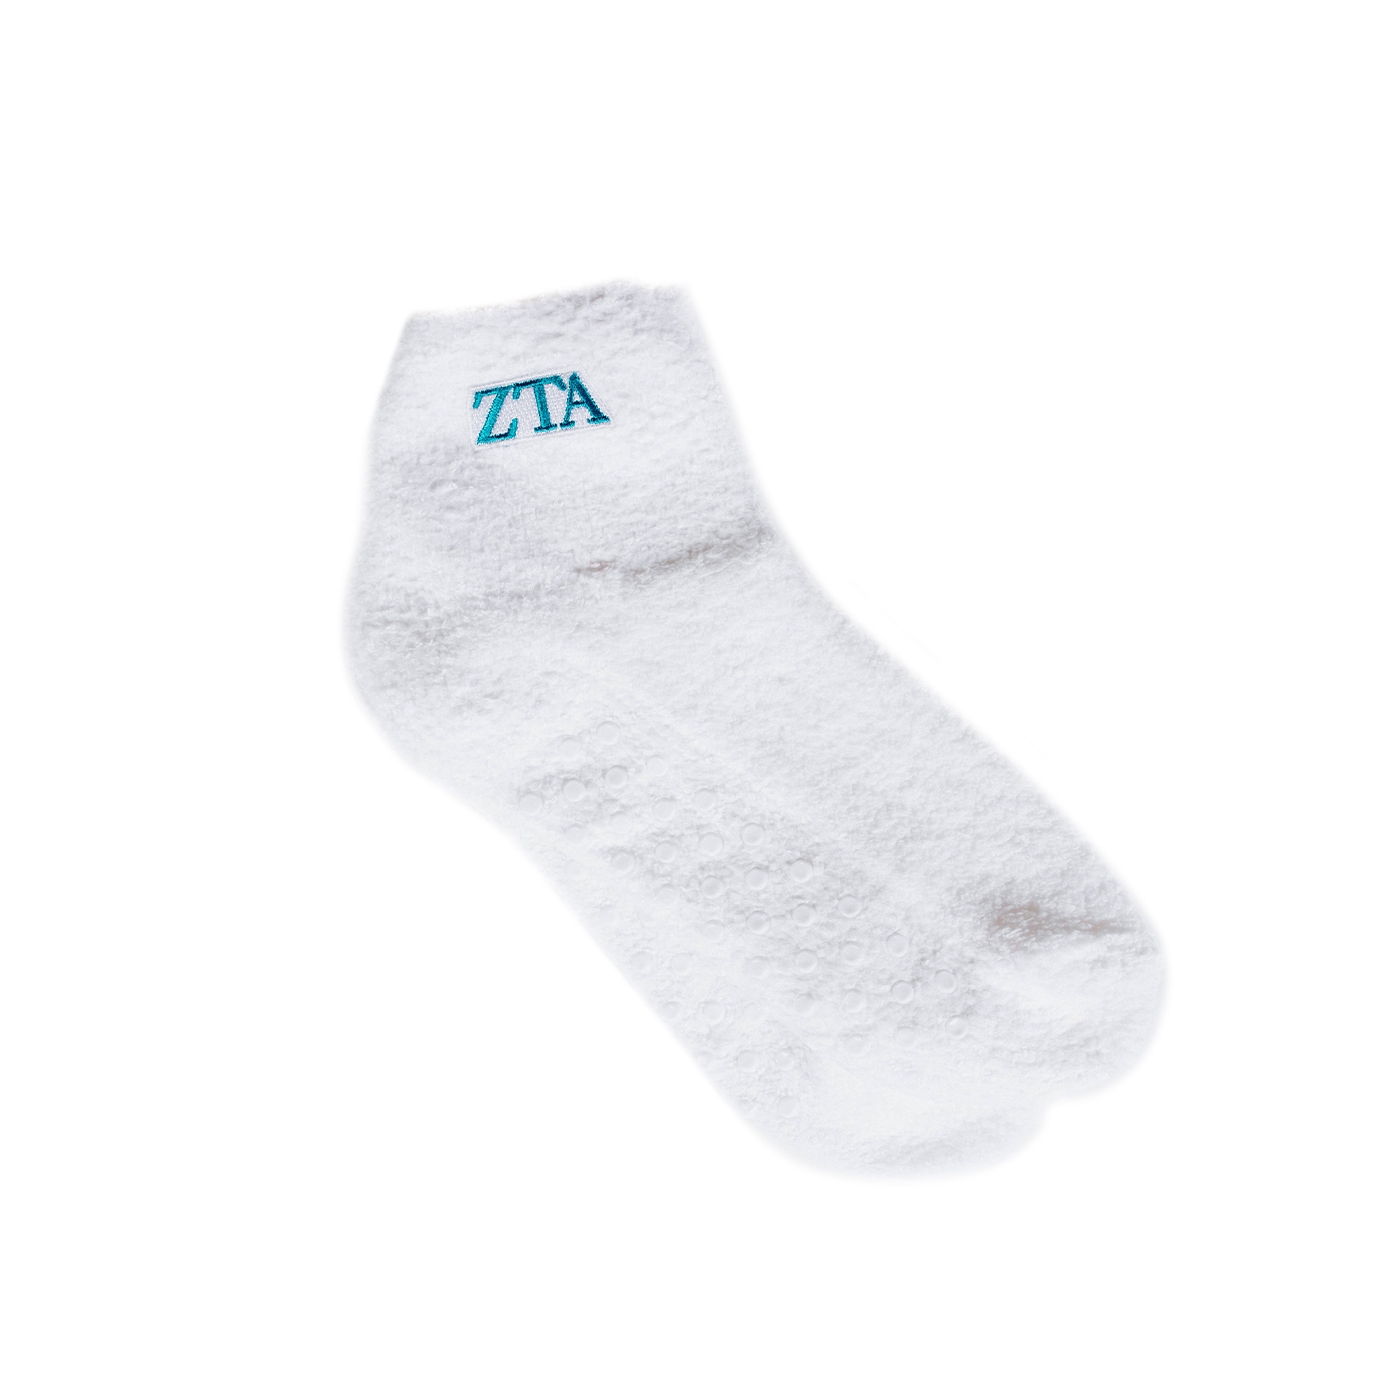 ZTA Fuzzy Slipper Socks